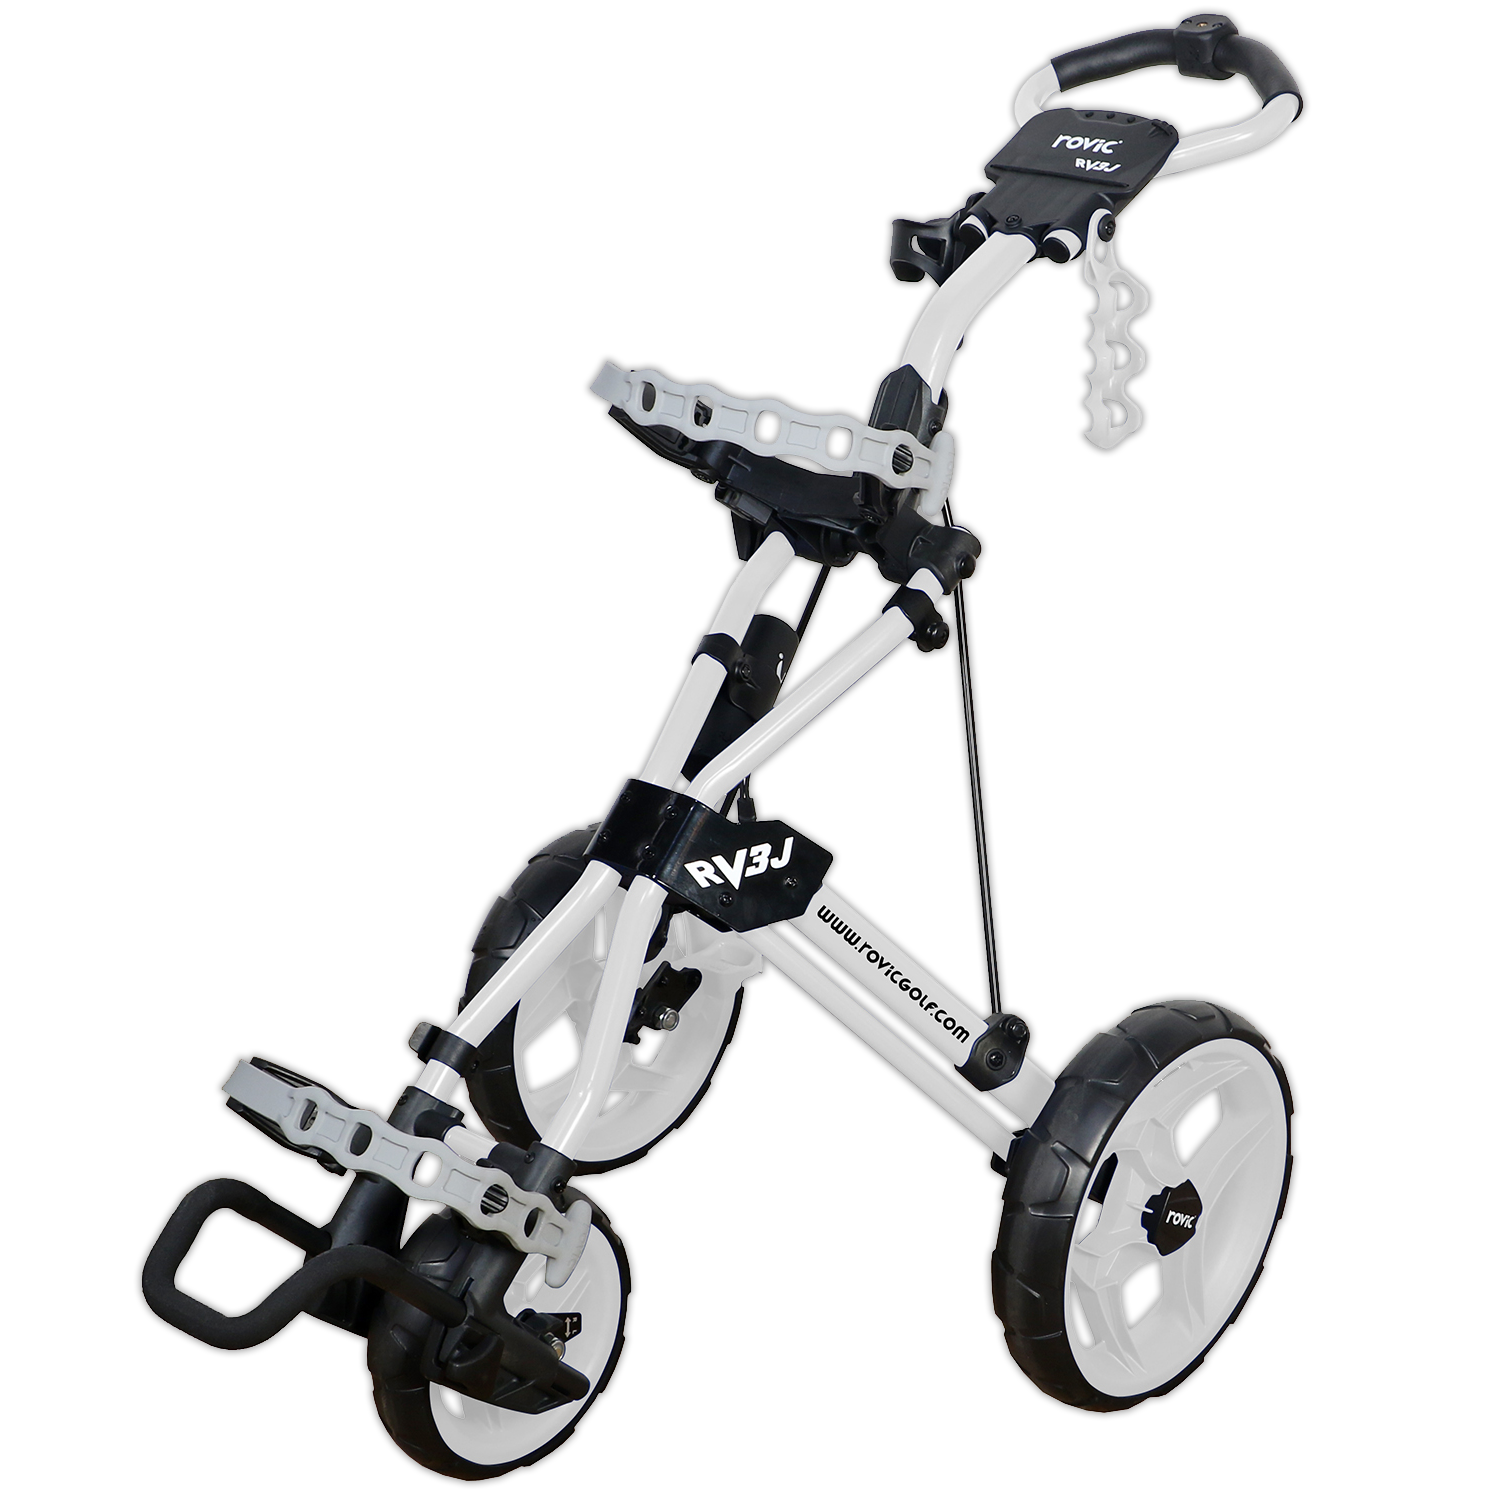 Rovic RV3J Junior Golf Push Cart